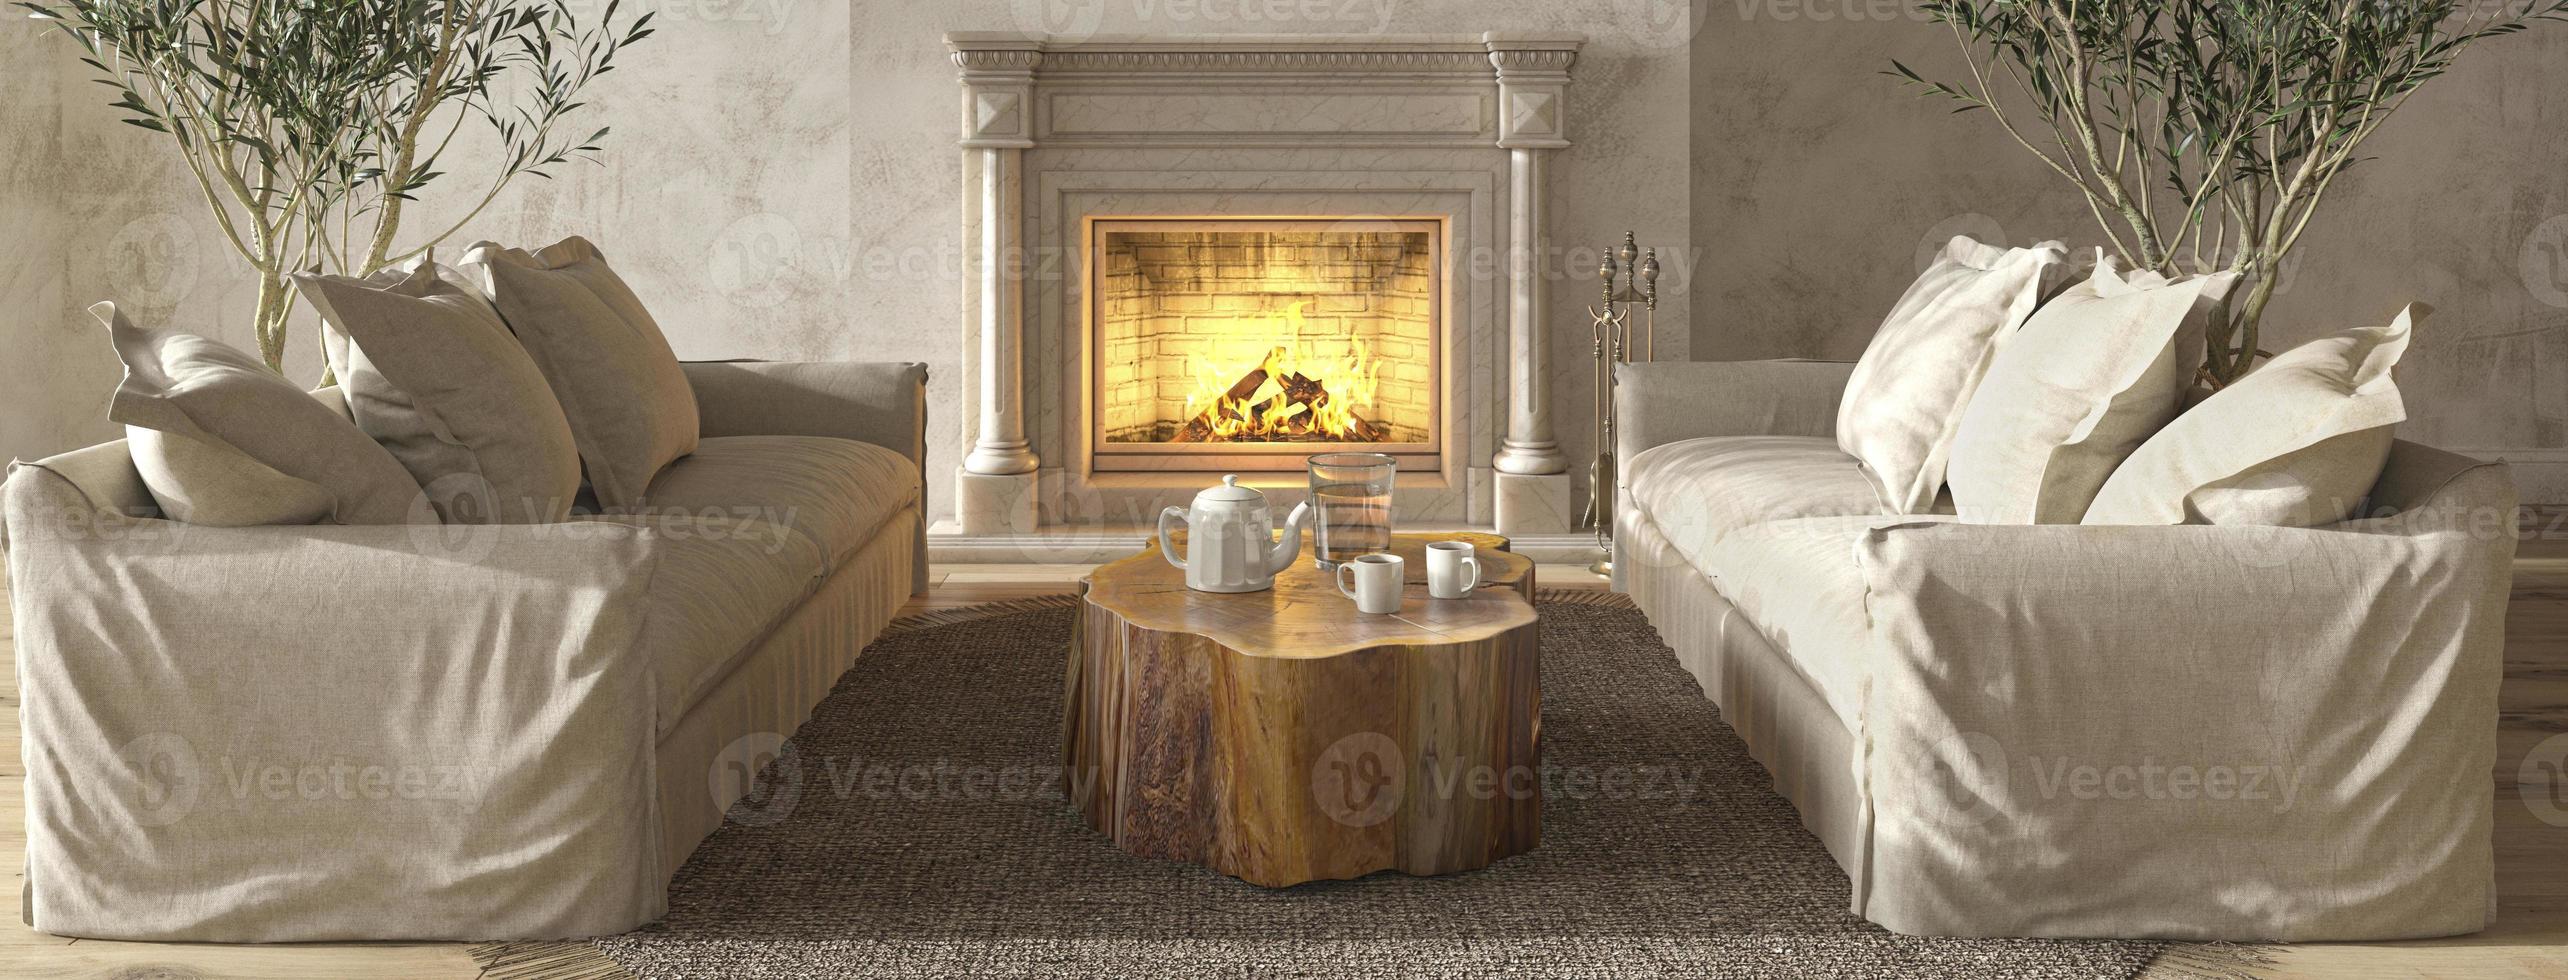 intérieur de salon beige de style ferme scandinave avec mobilier en bois naturel et cheminée. fond de bannière web. illustration de rendu 3d. photo